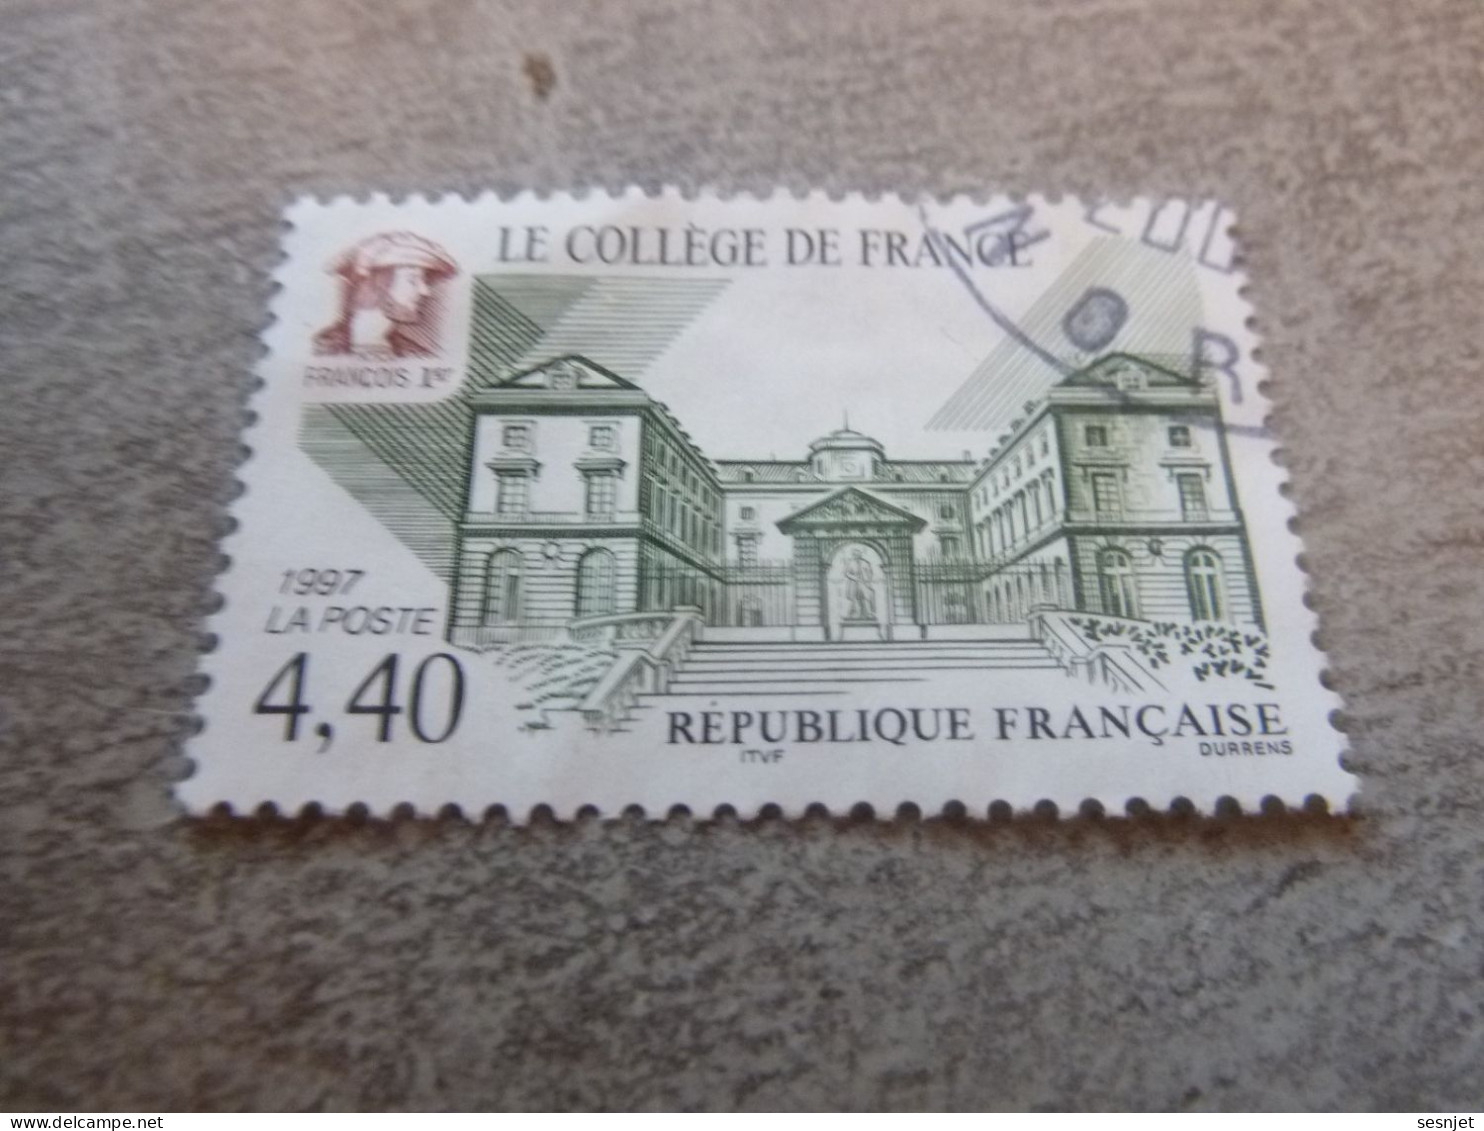 Le Collège De France - 4f.40 - Yt 3114 - Vert, Brun Et Noir - Oblitéré - Année 1997 - - Gebraucht